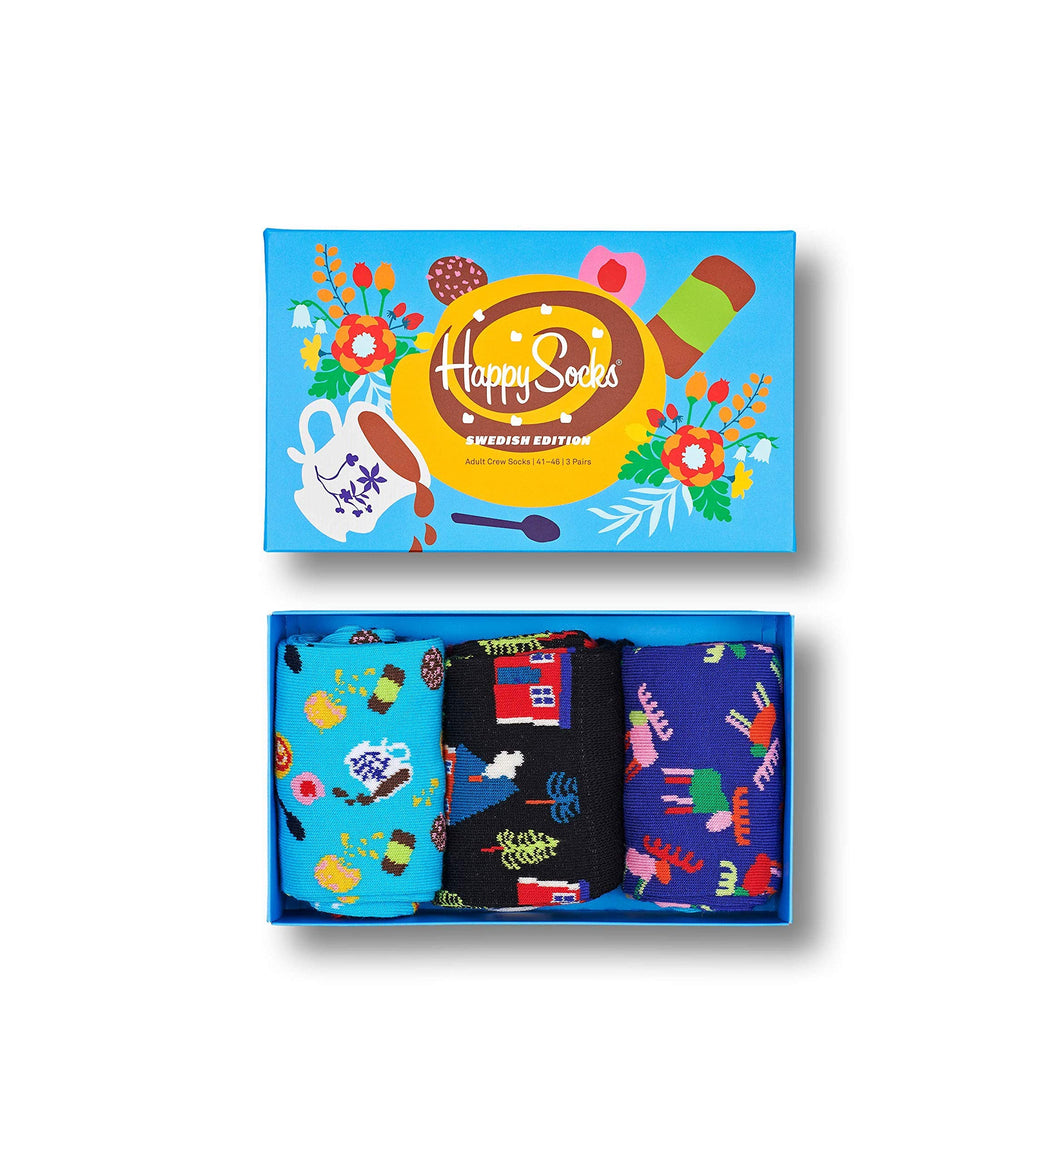 Happy Socks 3-Pack Swedish Edition Gift Set, colorate e divertenti, Calzini per uomo e donna, Blu 3 paia